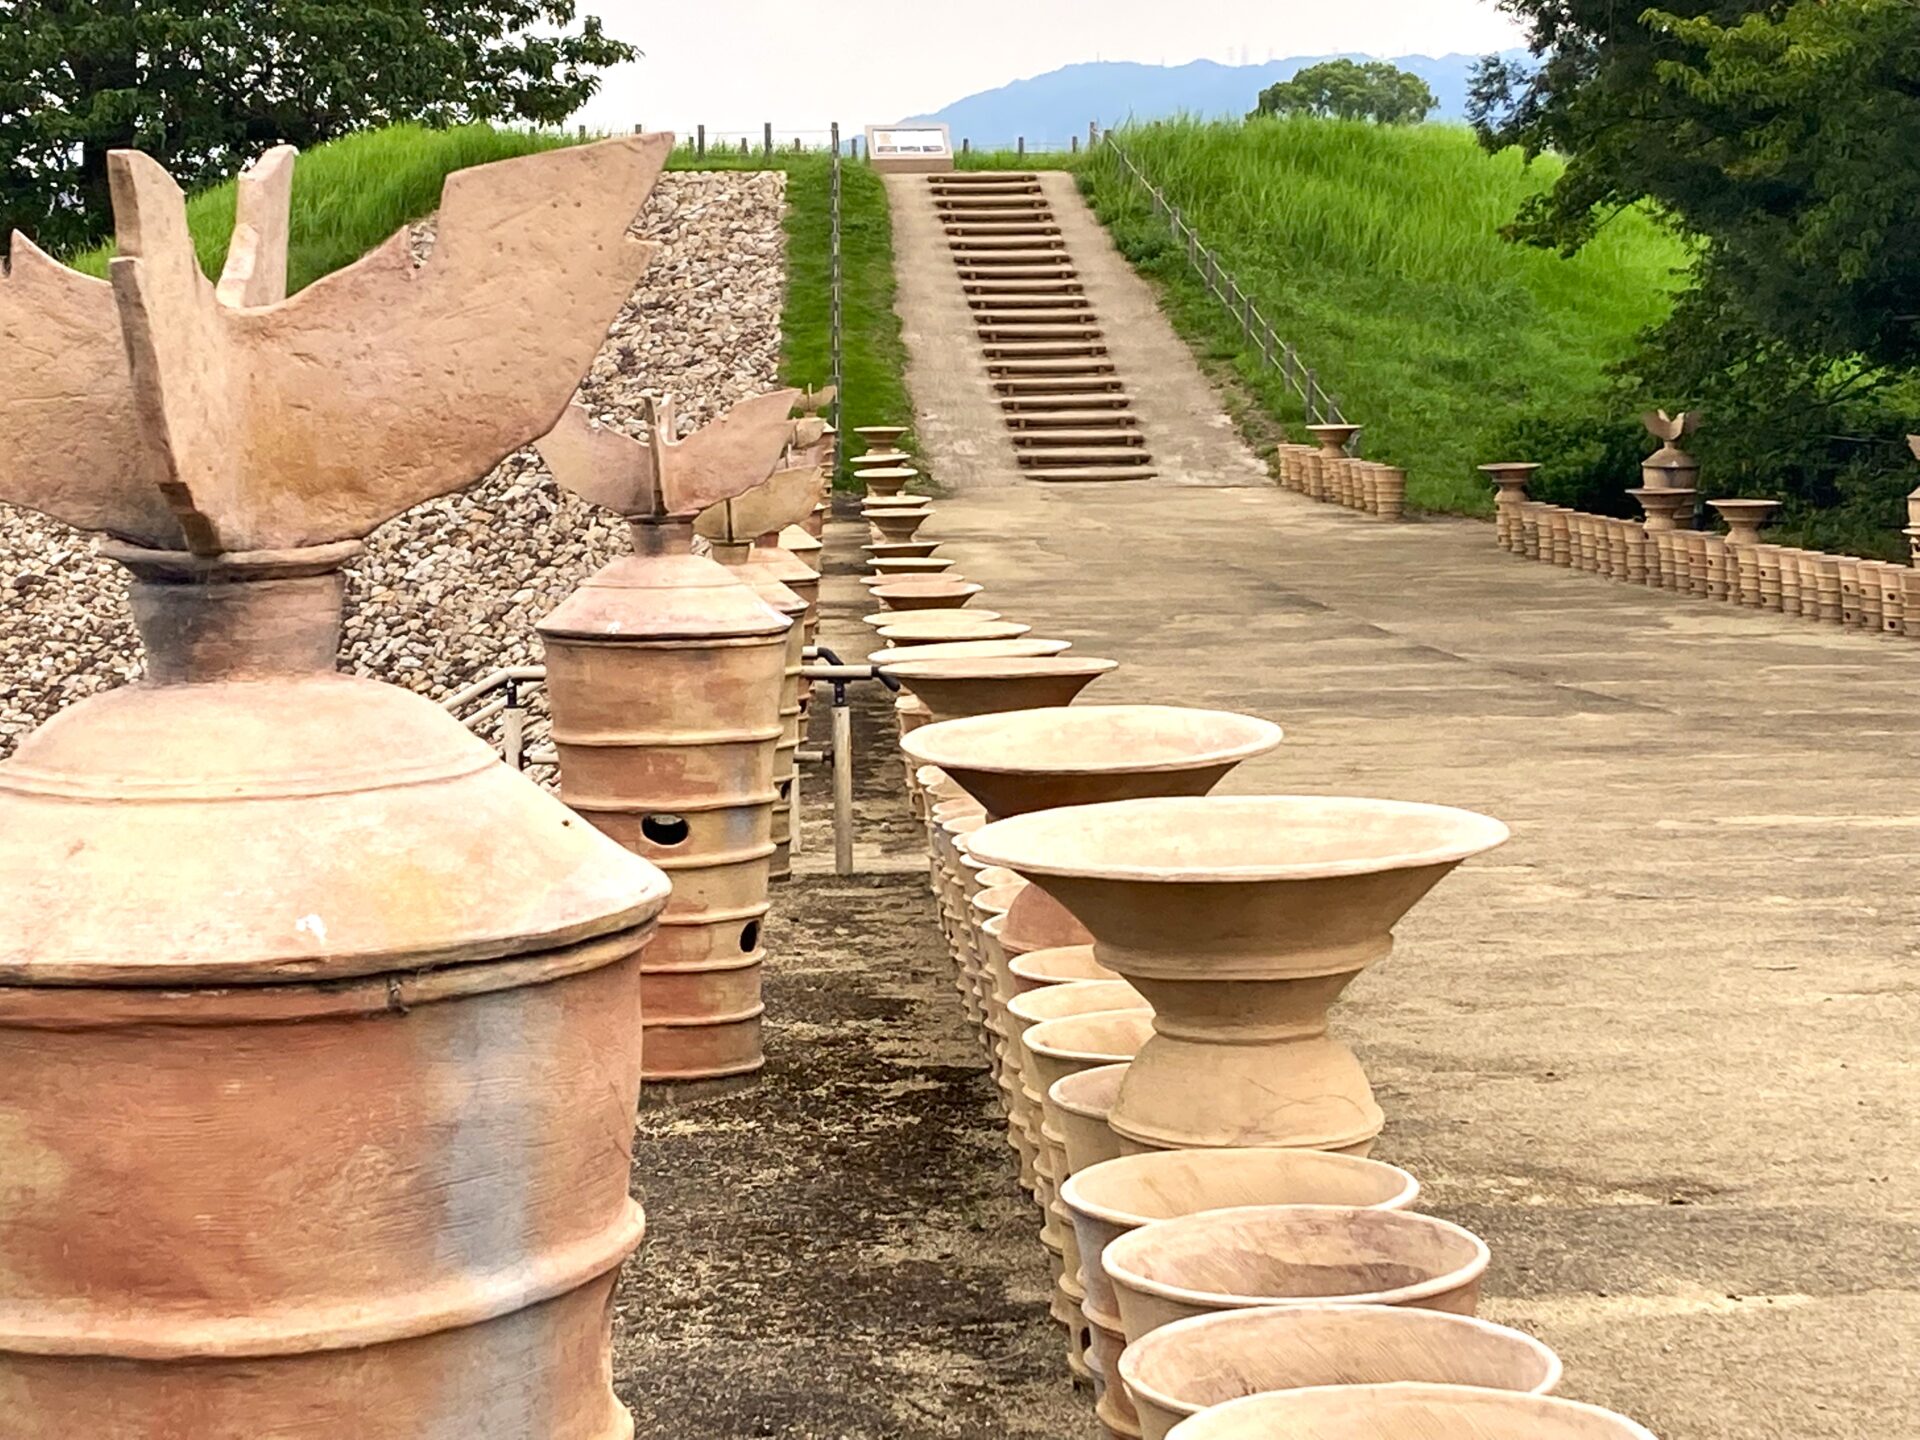 円筒埴輪が並ぶ、復元された「国史跡 心合寺山古墳」